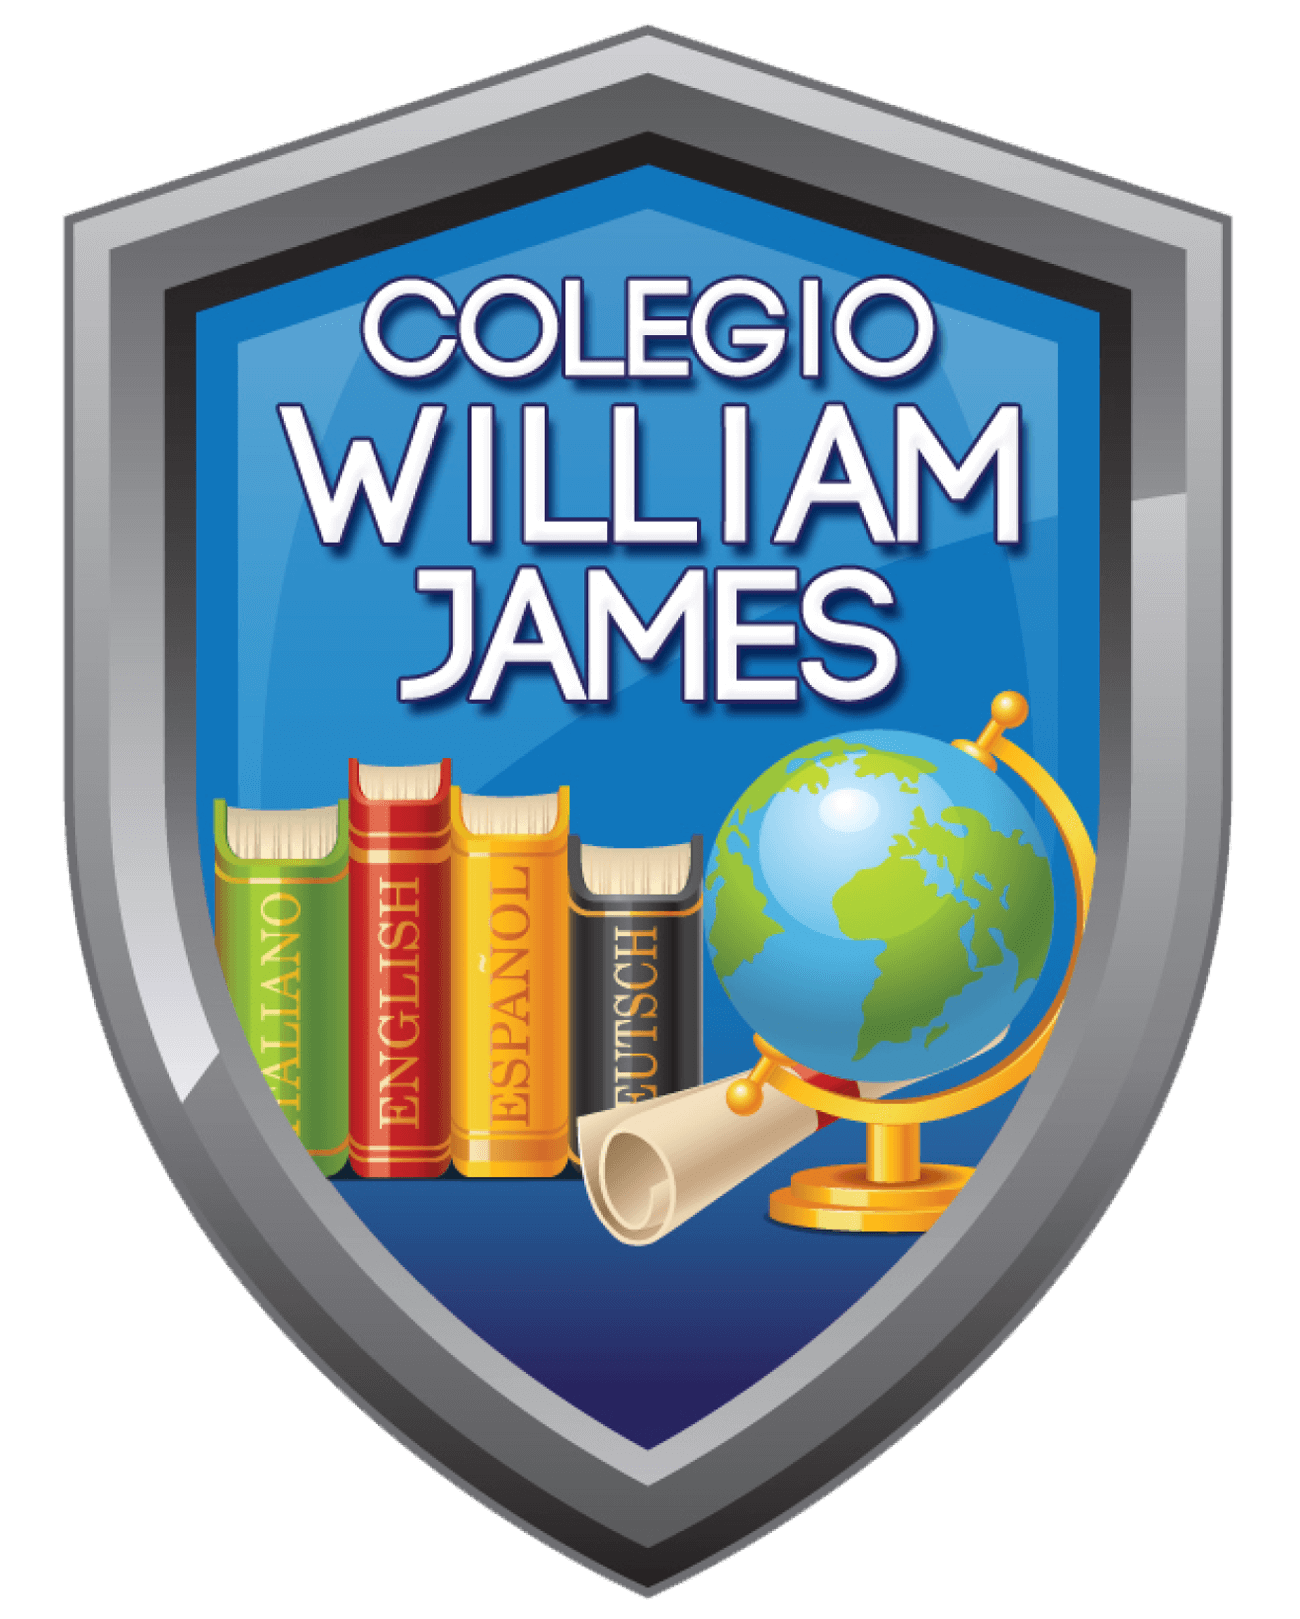 THE WILLIAM JAMES SCHOOL